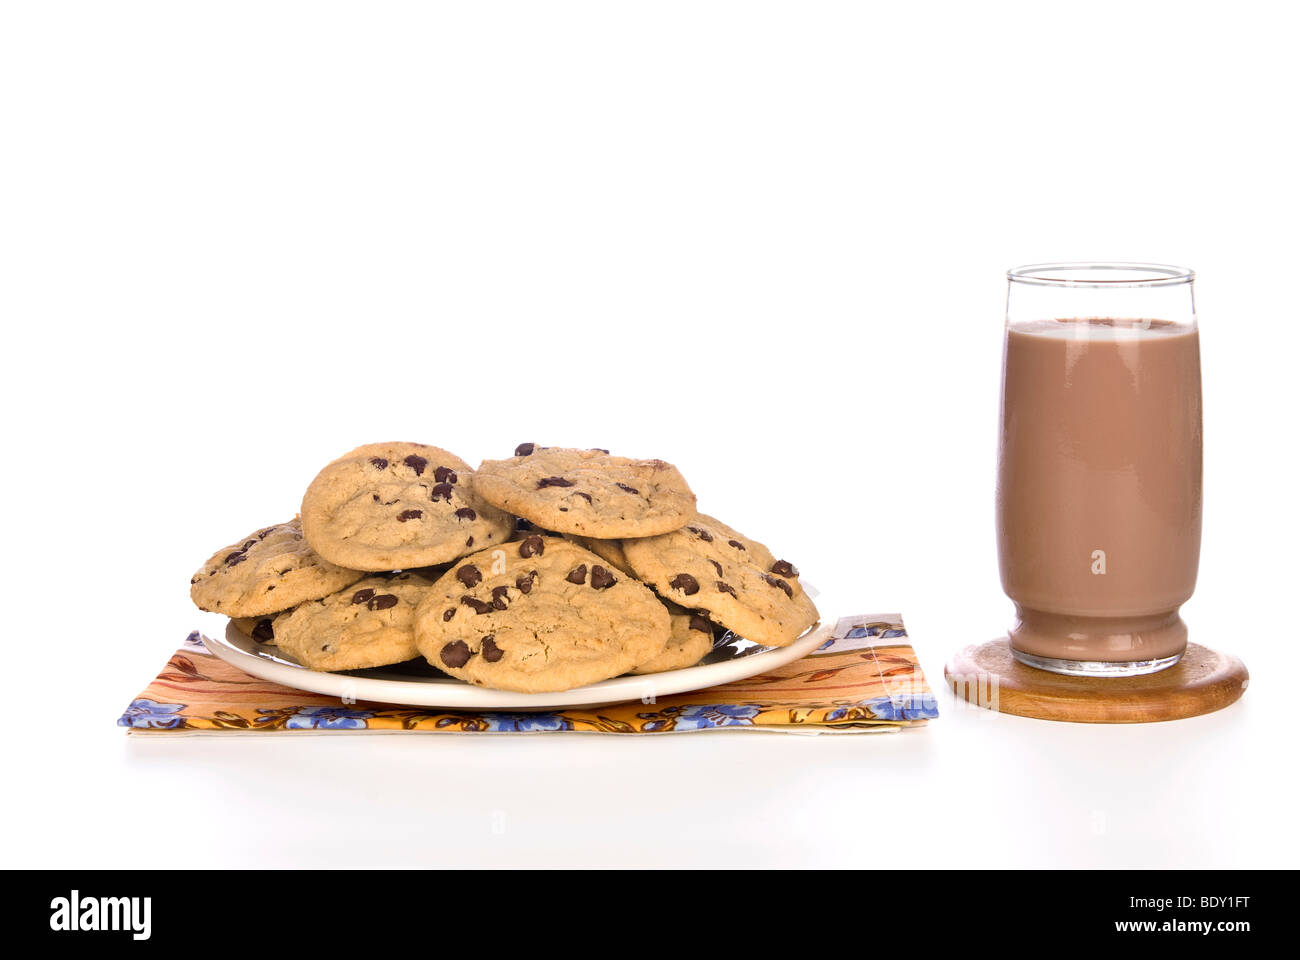 Un plato lleno de galletas con trocitos de chocolate casero con un frío vaso de leche con chocolate listo para consumir. Foto de stock